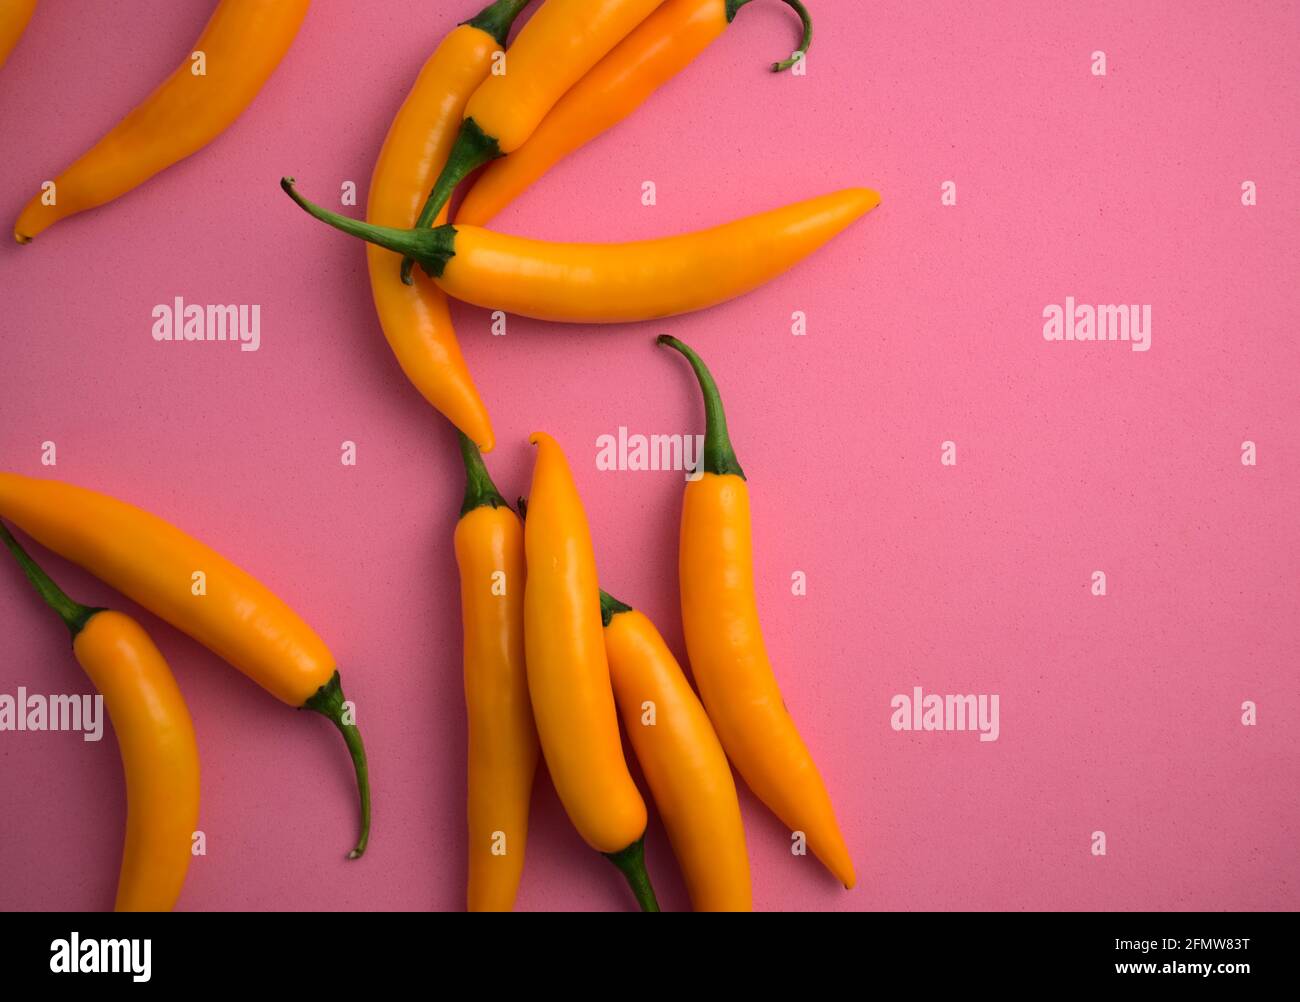 Frische natürliche lebendige gelbe Chilischoten liegen flach auf rosa Hintergrund. Schöne Küche, würzige Zutaten, Food Styling, Heißgeschmack Mahlzeit Konzept. Stockfoto